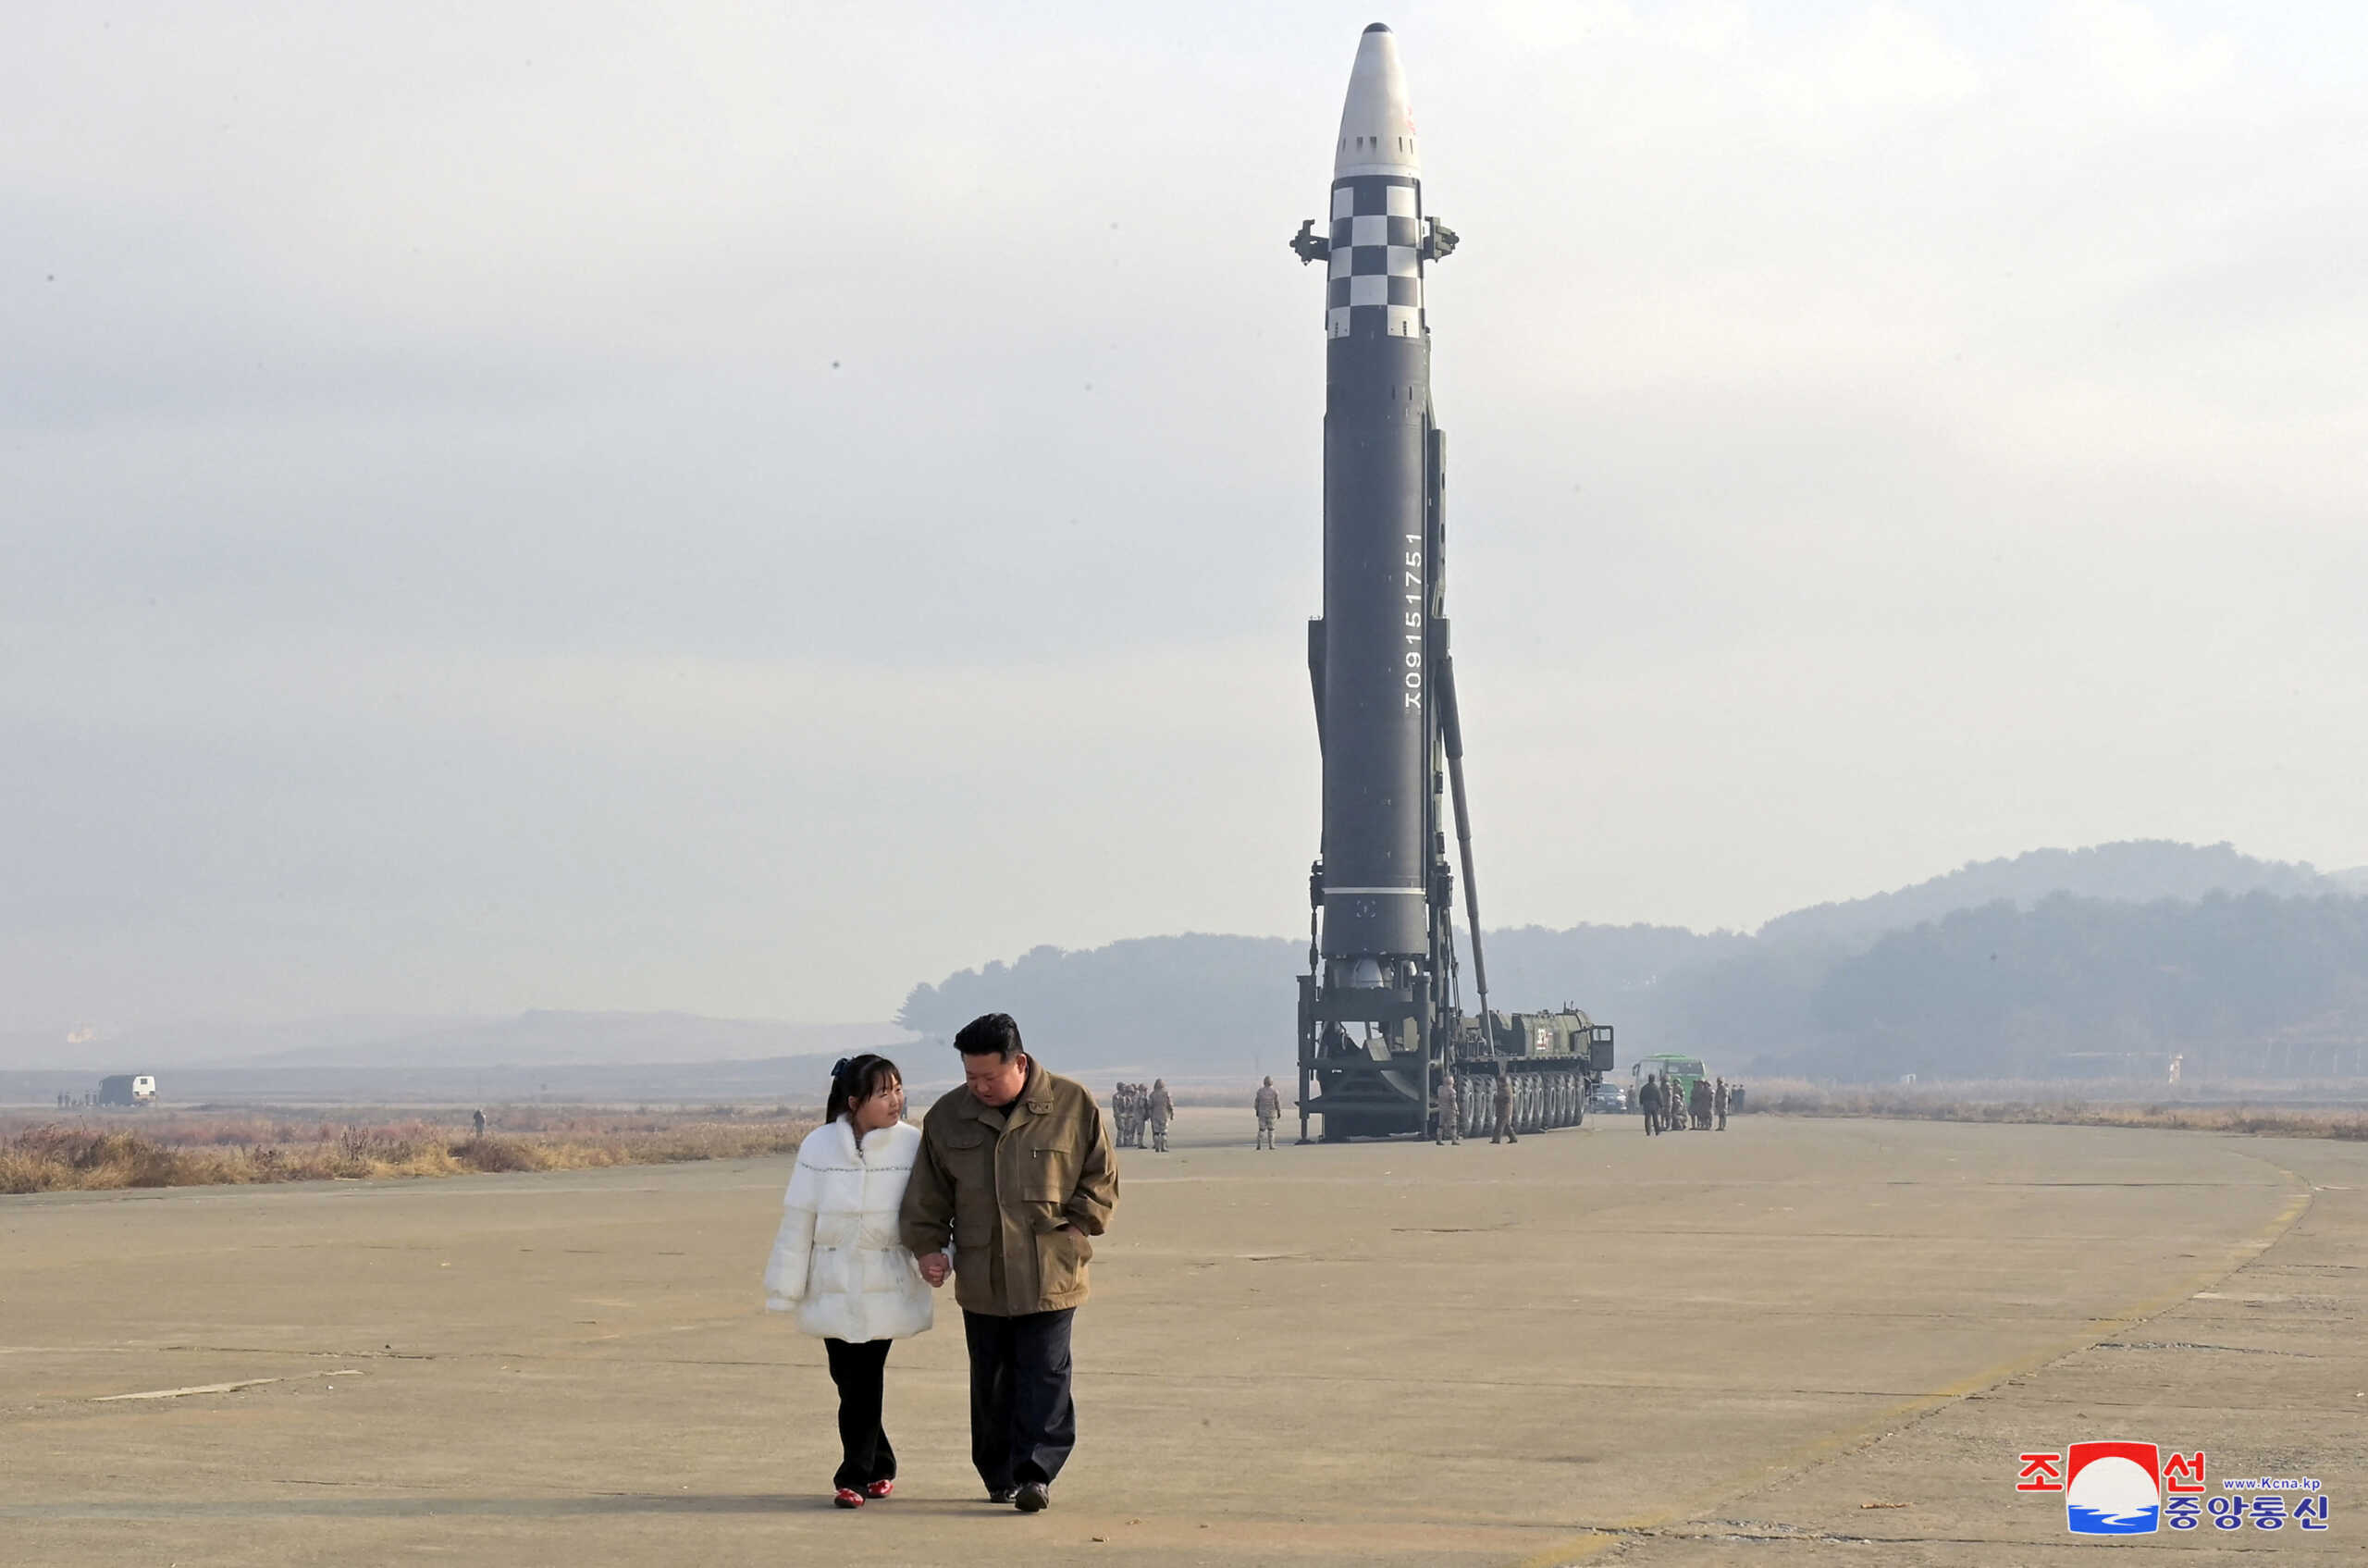 Βόρεια Κορέα: Ο Κιμ Γιονγκ Ουν εμφανίστηκε για πρώτη φορά με την κόρη του στην εκτόξευση πυραύλου